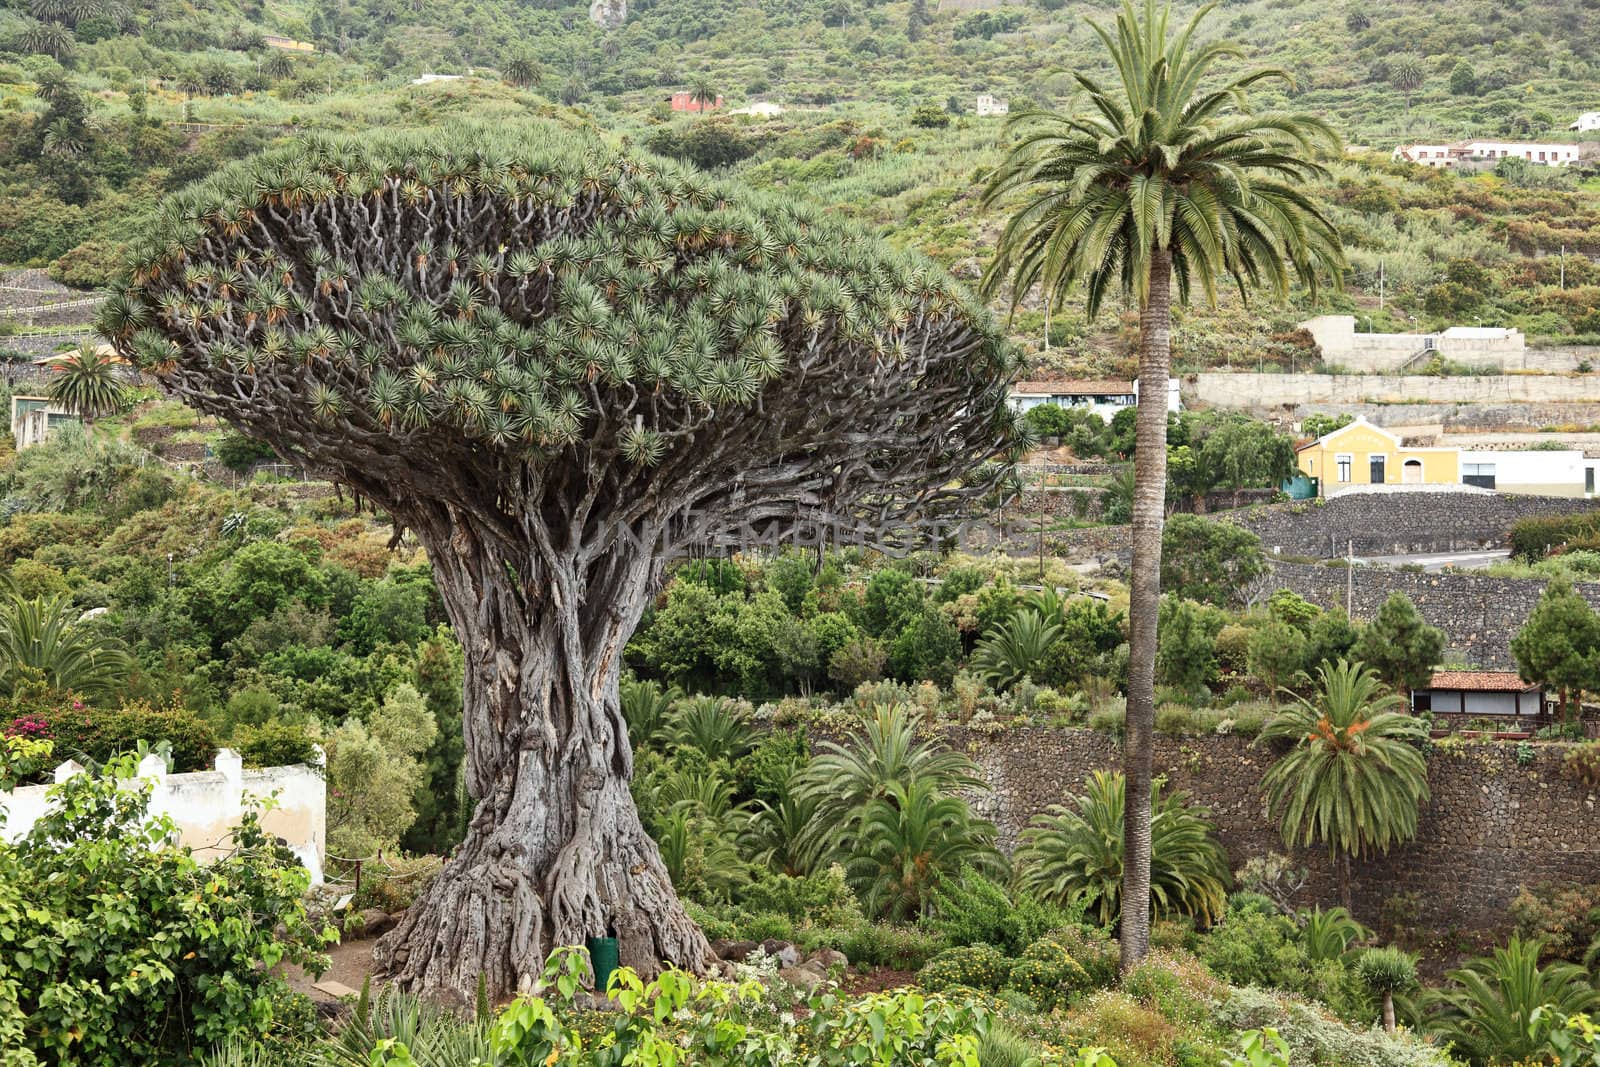 Tenerife famous dragon Tree, Dracaena draco or Drago in Icod de los VInos, Tenerife, Canary Islands, Spain.